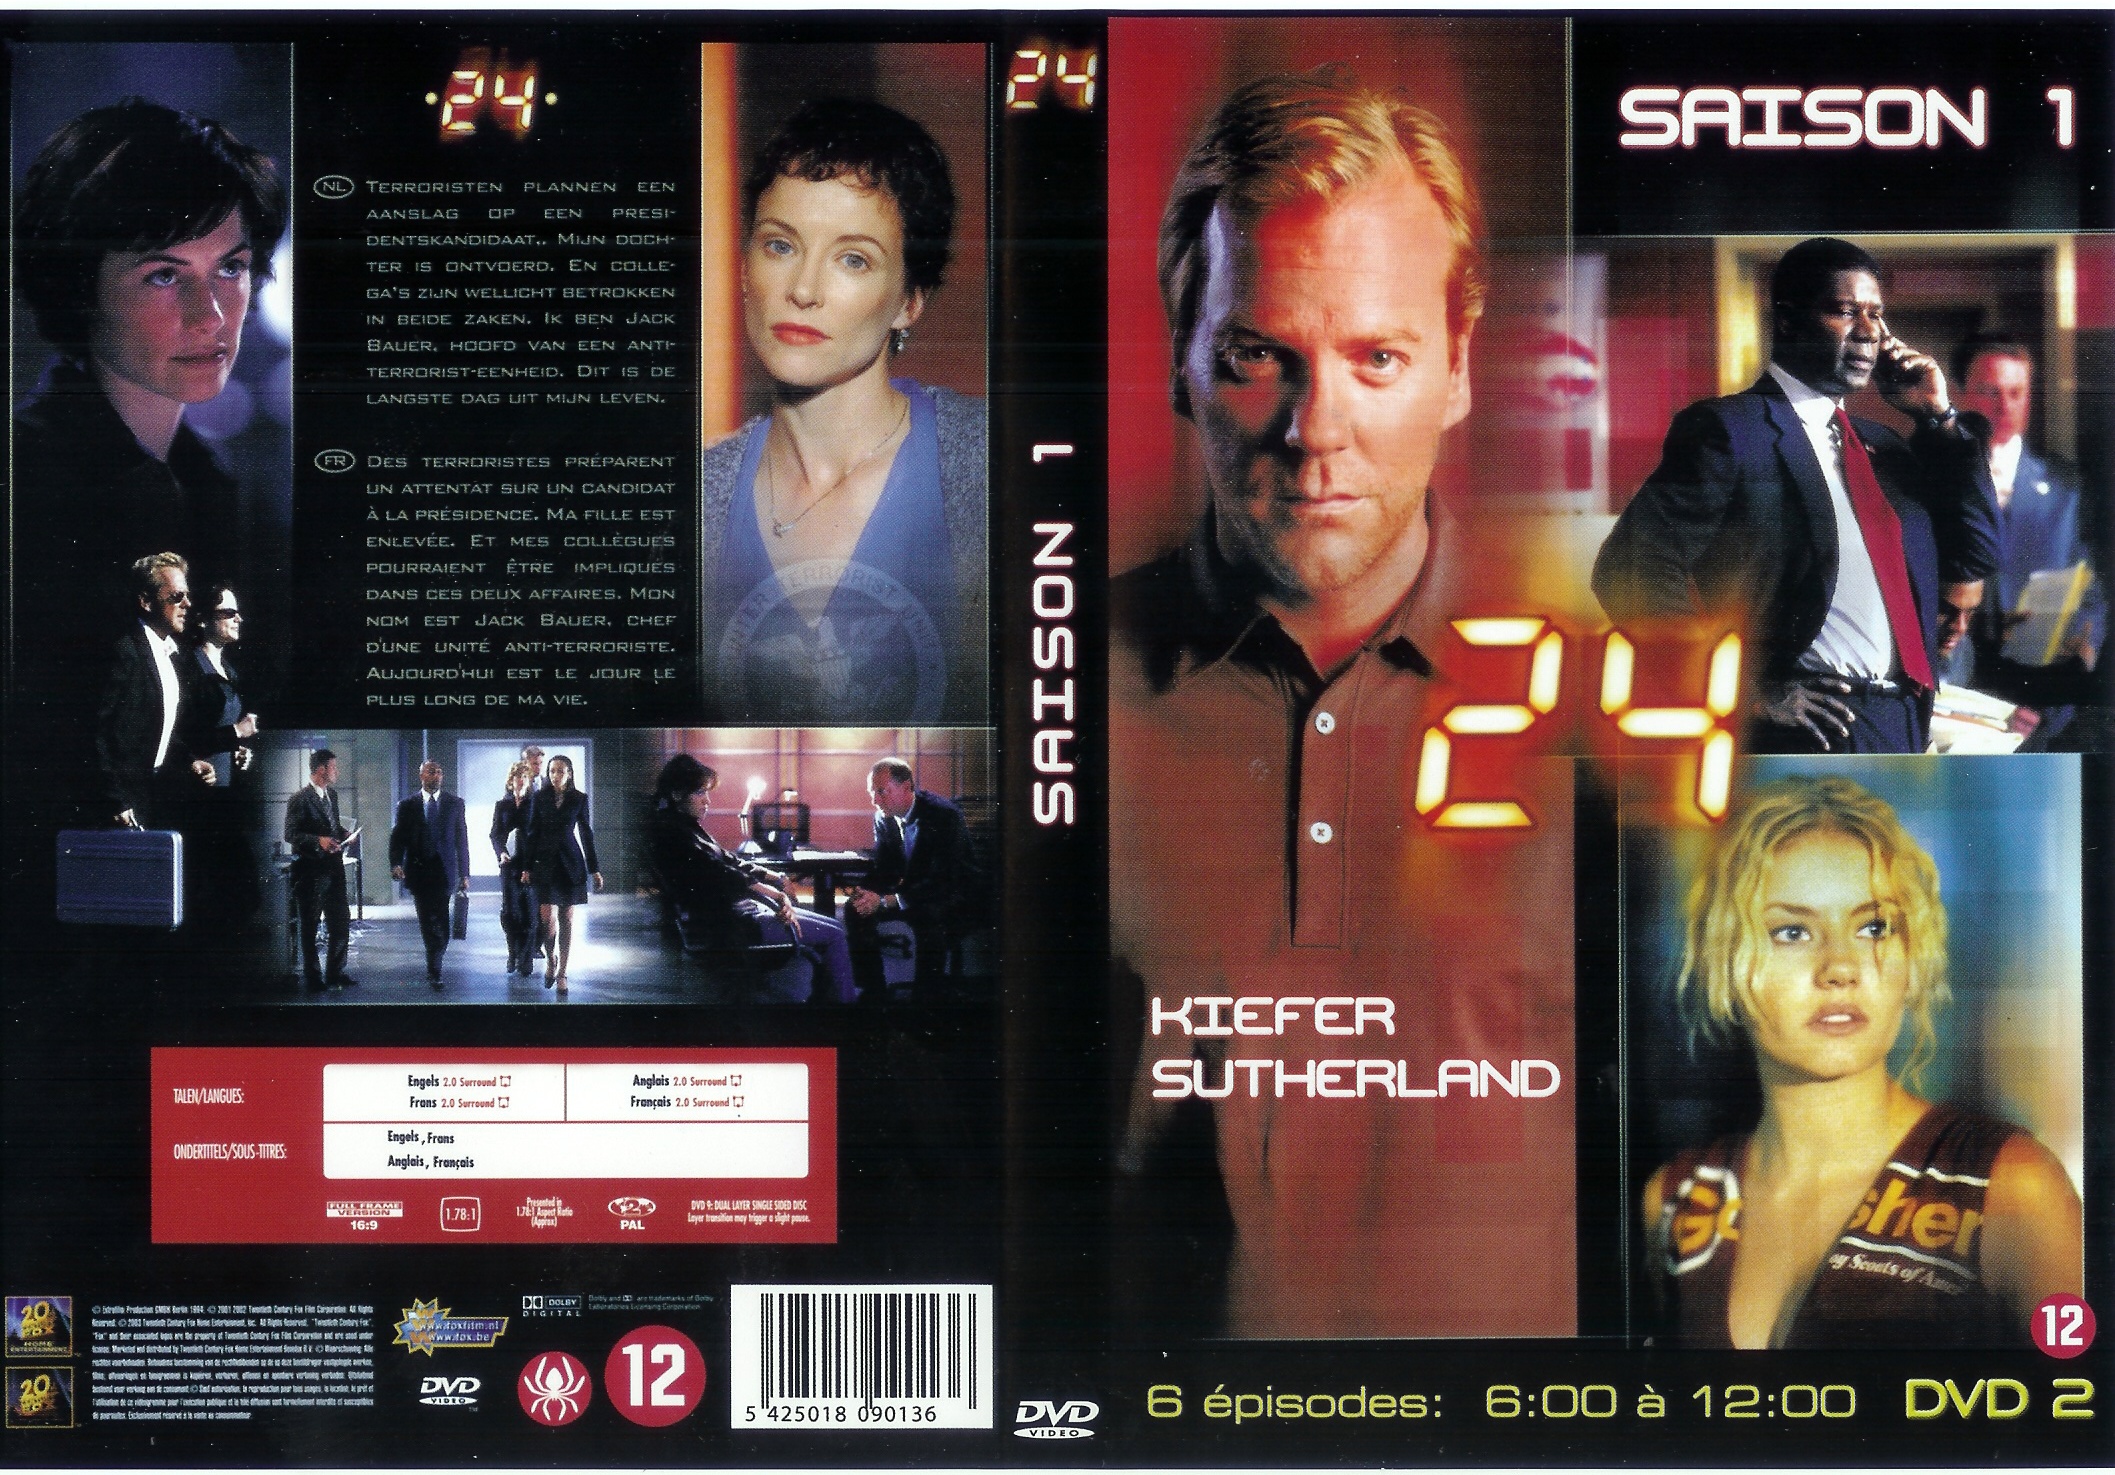 Jaquette DVD 24 heures chrono Saison 1 dvd 2 (coffret 4 dvd)